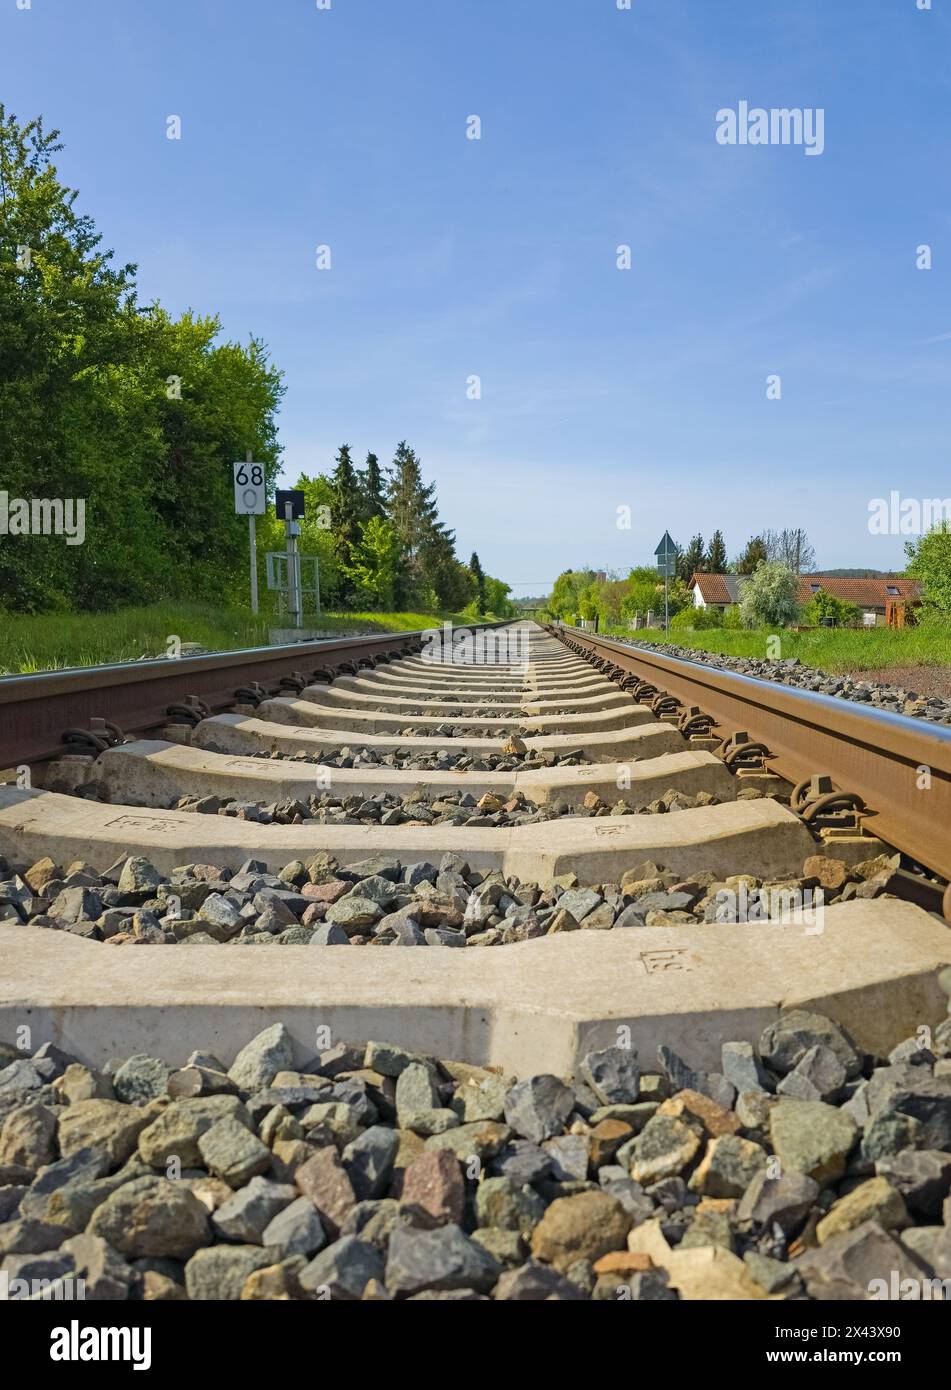 Binari ferroviari in direzione dell'infinito Foto Stock